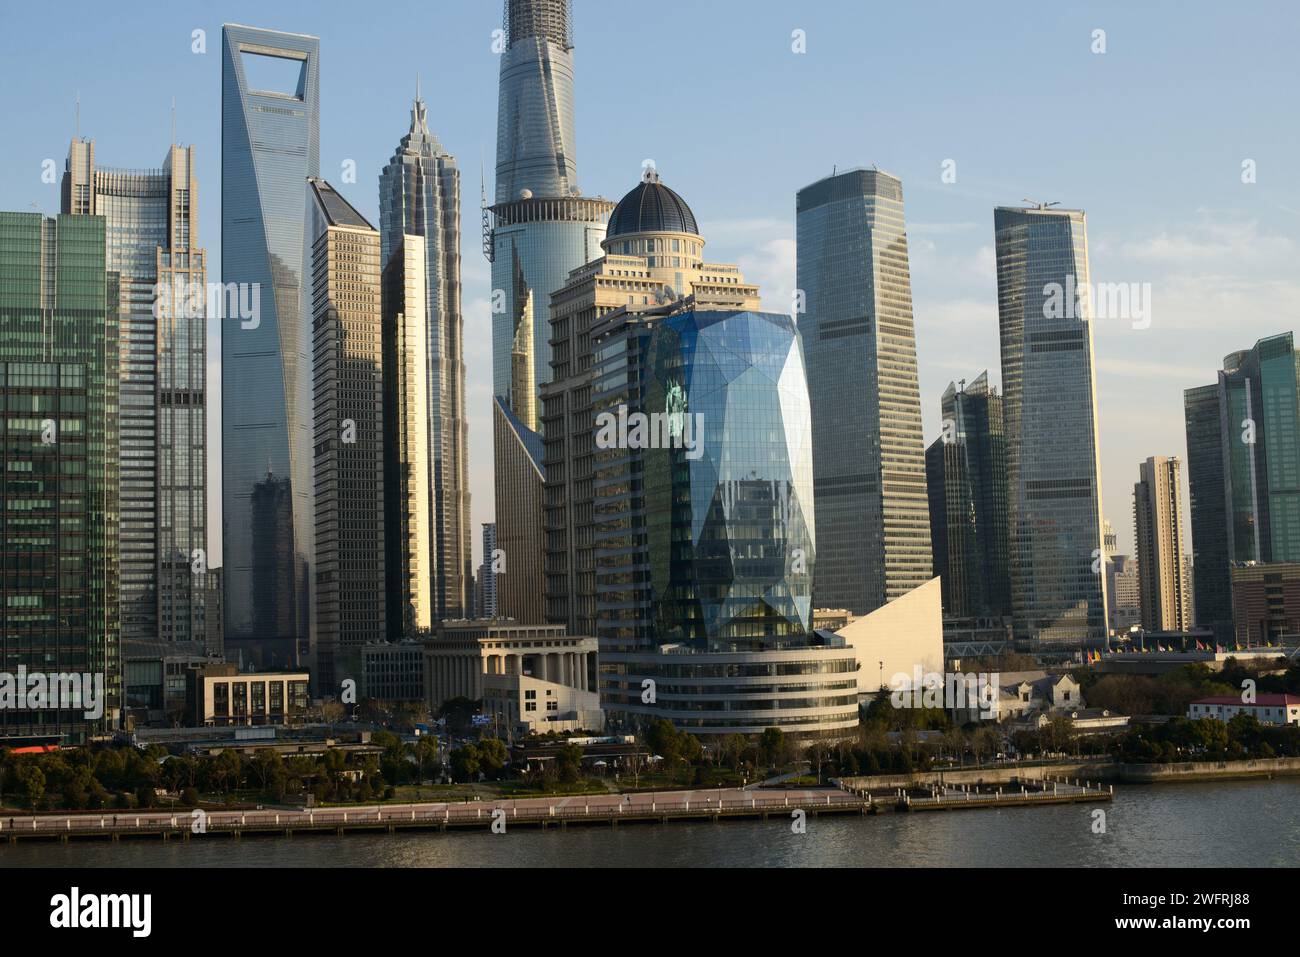 La dynamique Skyline de Shanghai avec ses gratte-ciel emblématiques surplombant le front de mer Banque D'Images